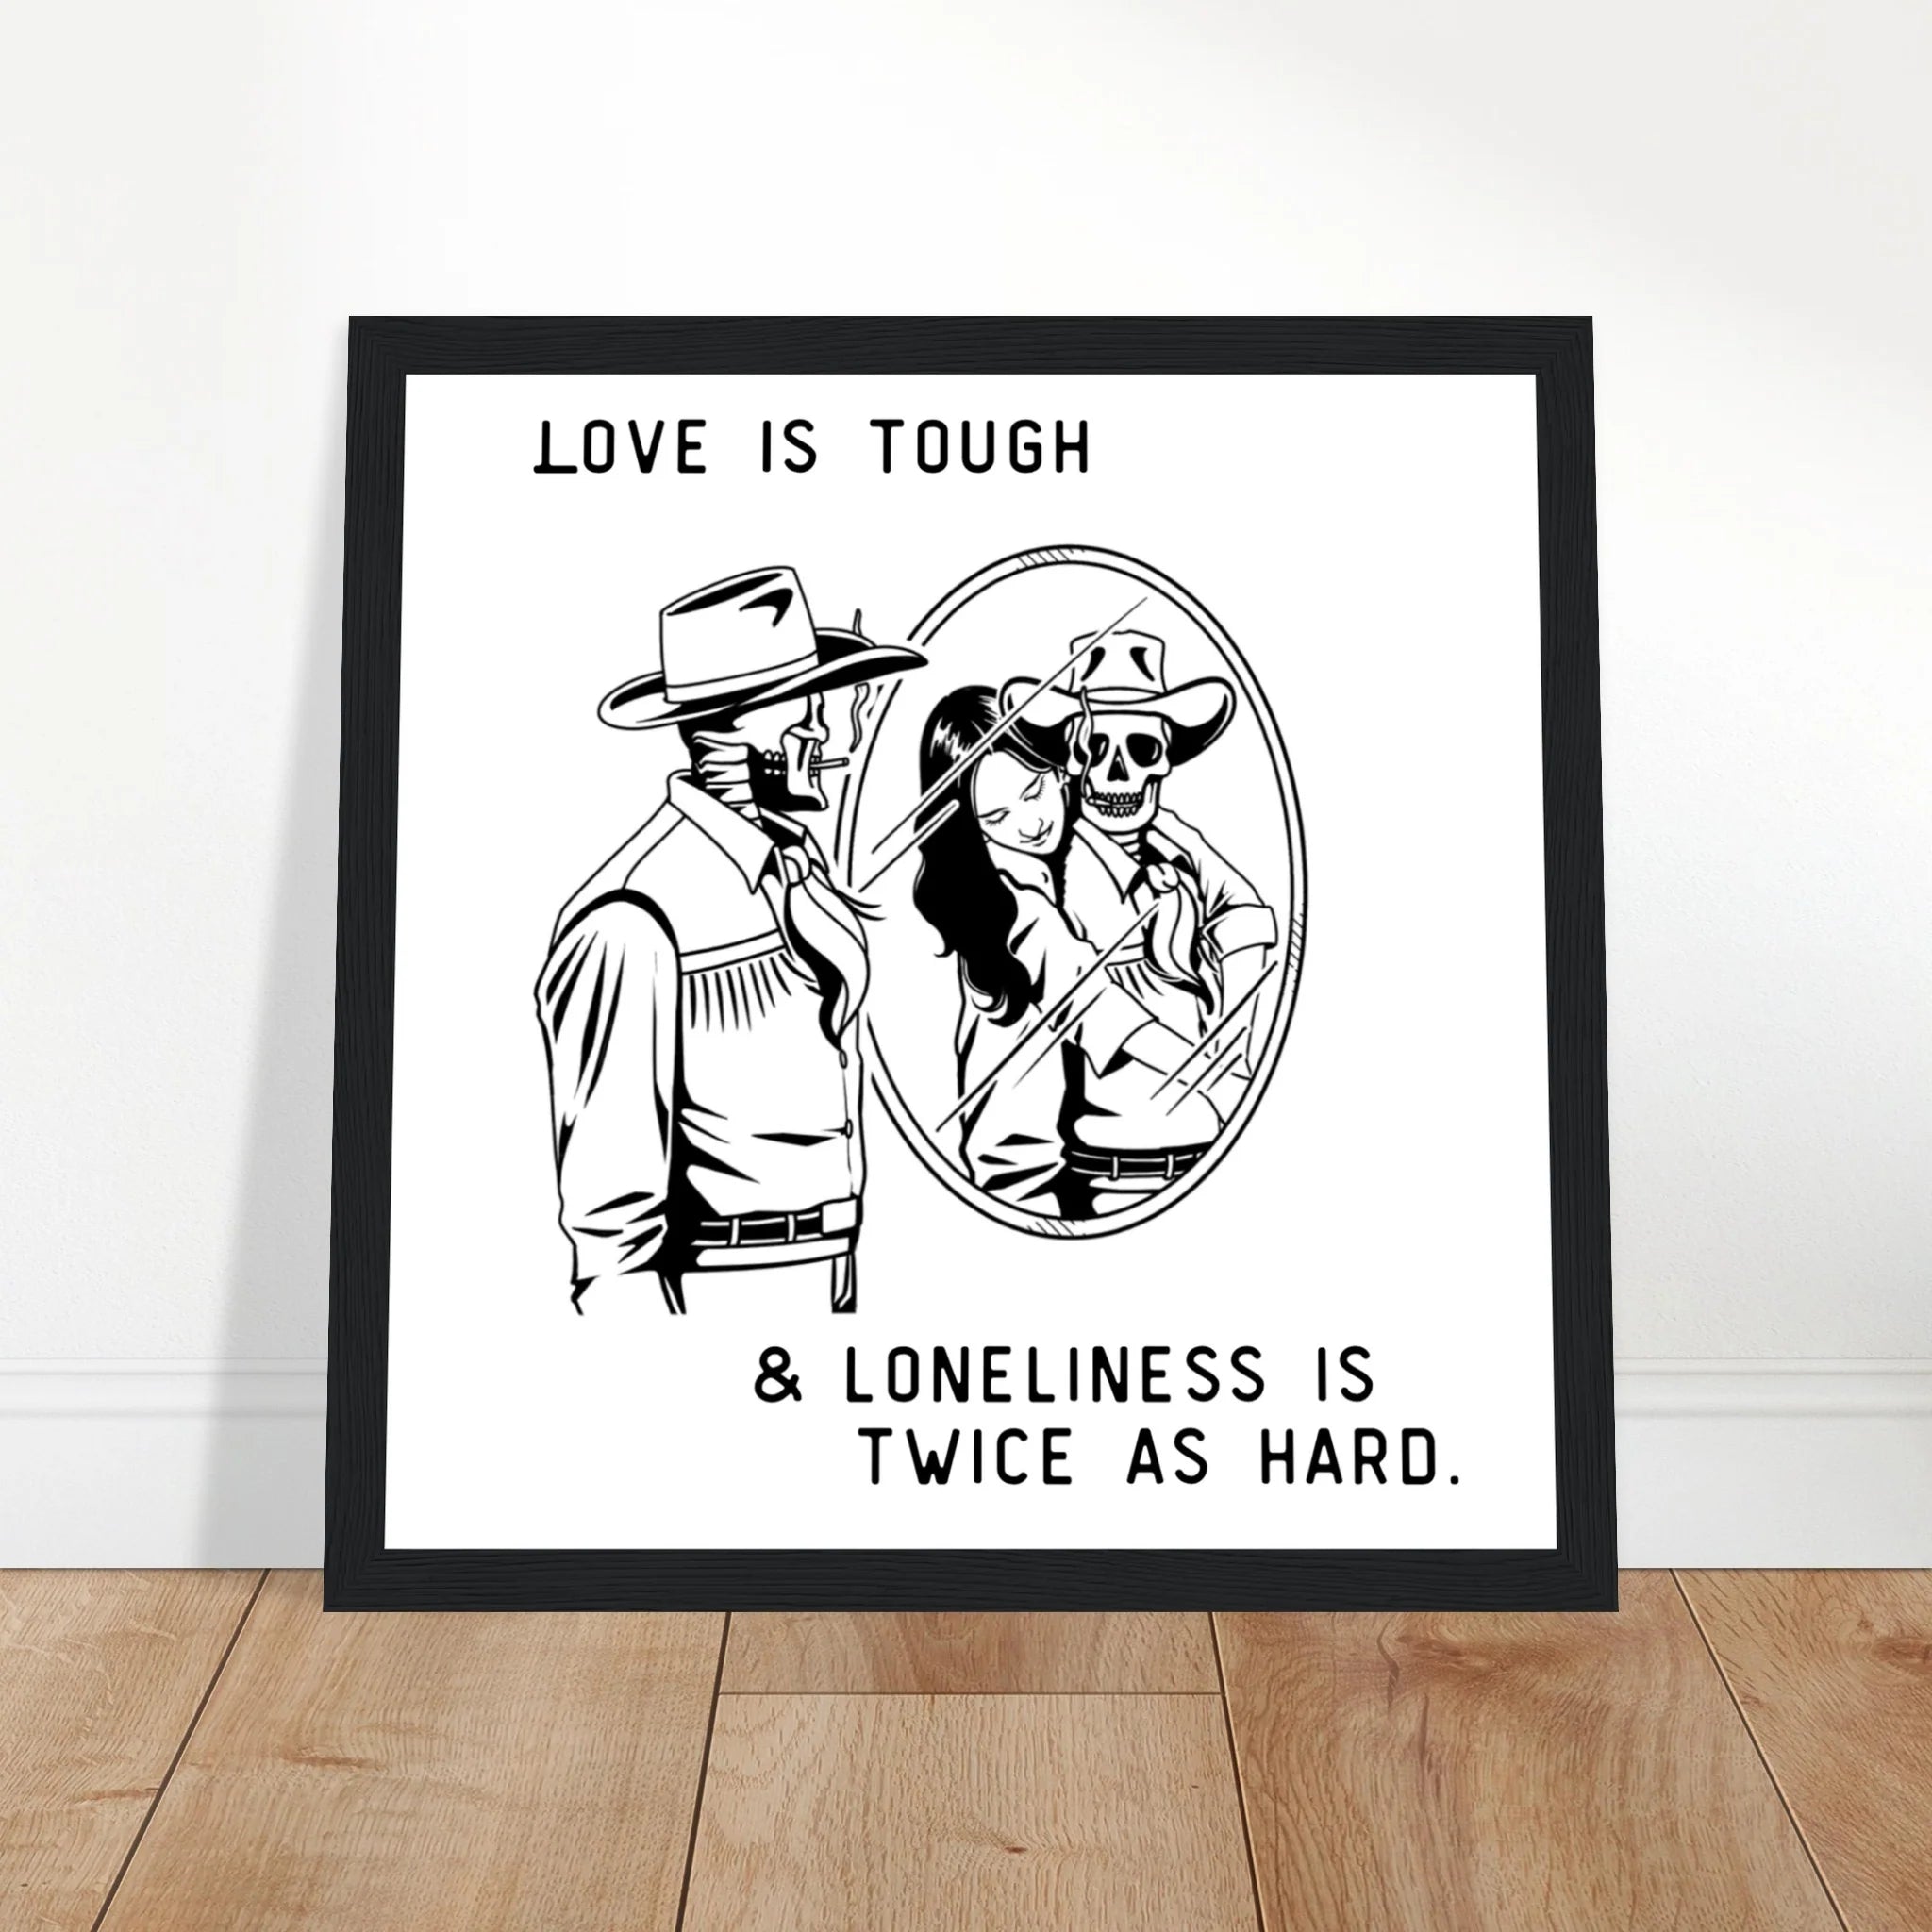 Love is Tough Dylan Gossett Inspired Wooden Framed Graphic Print